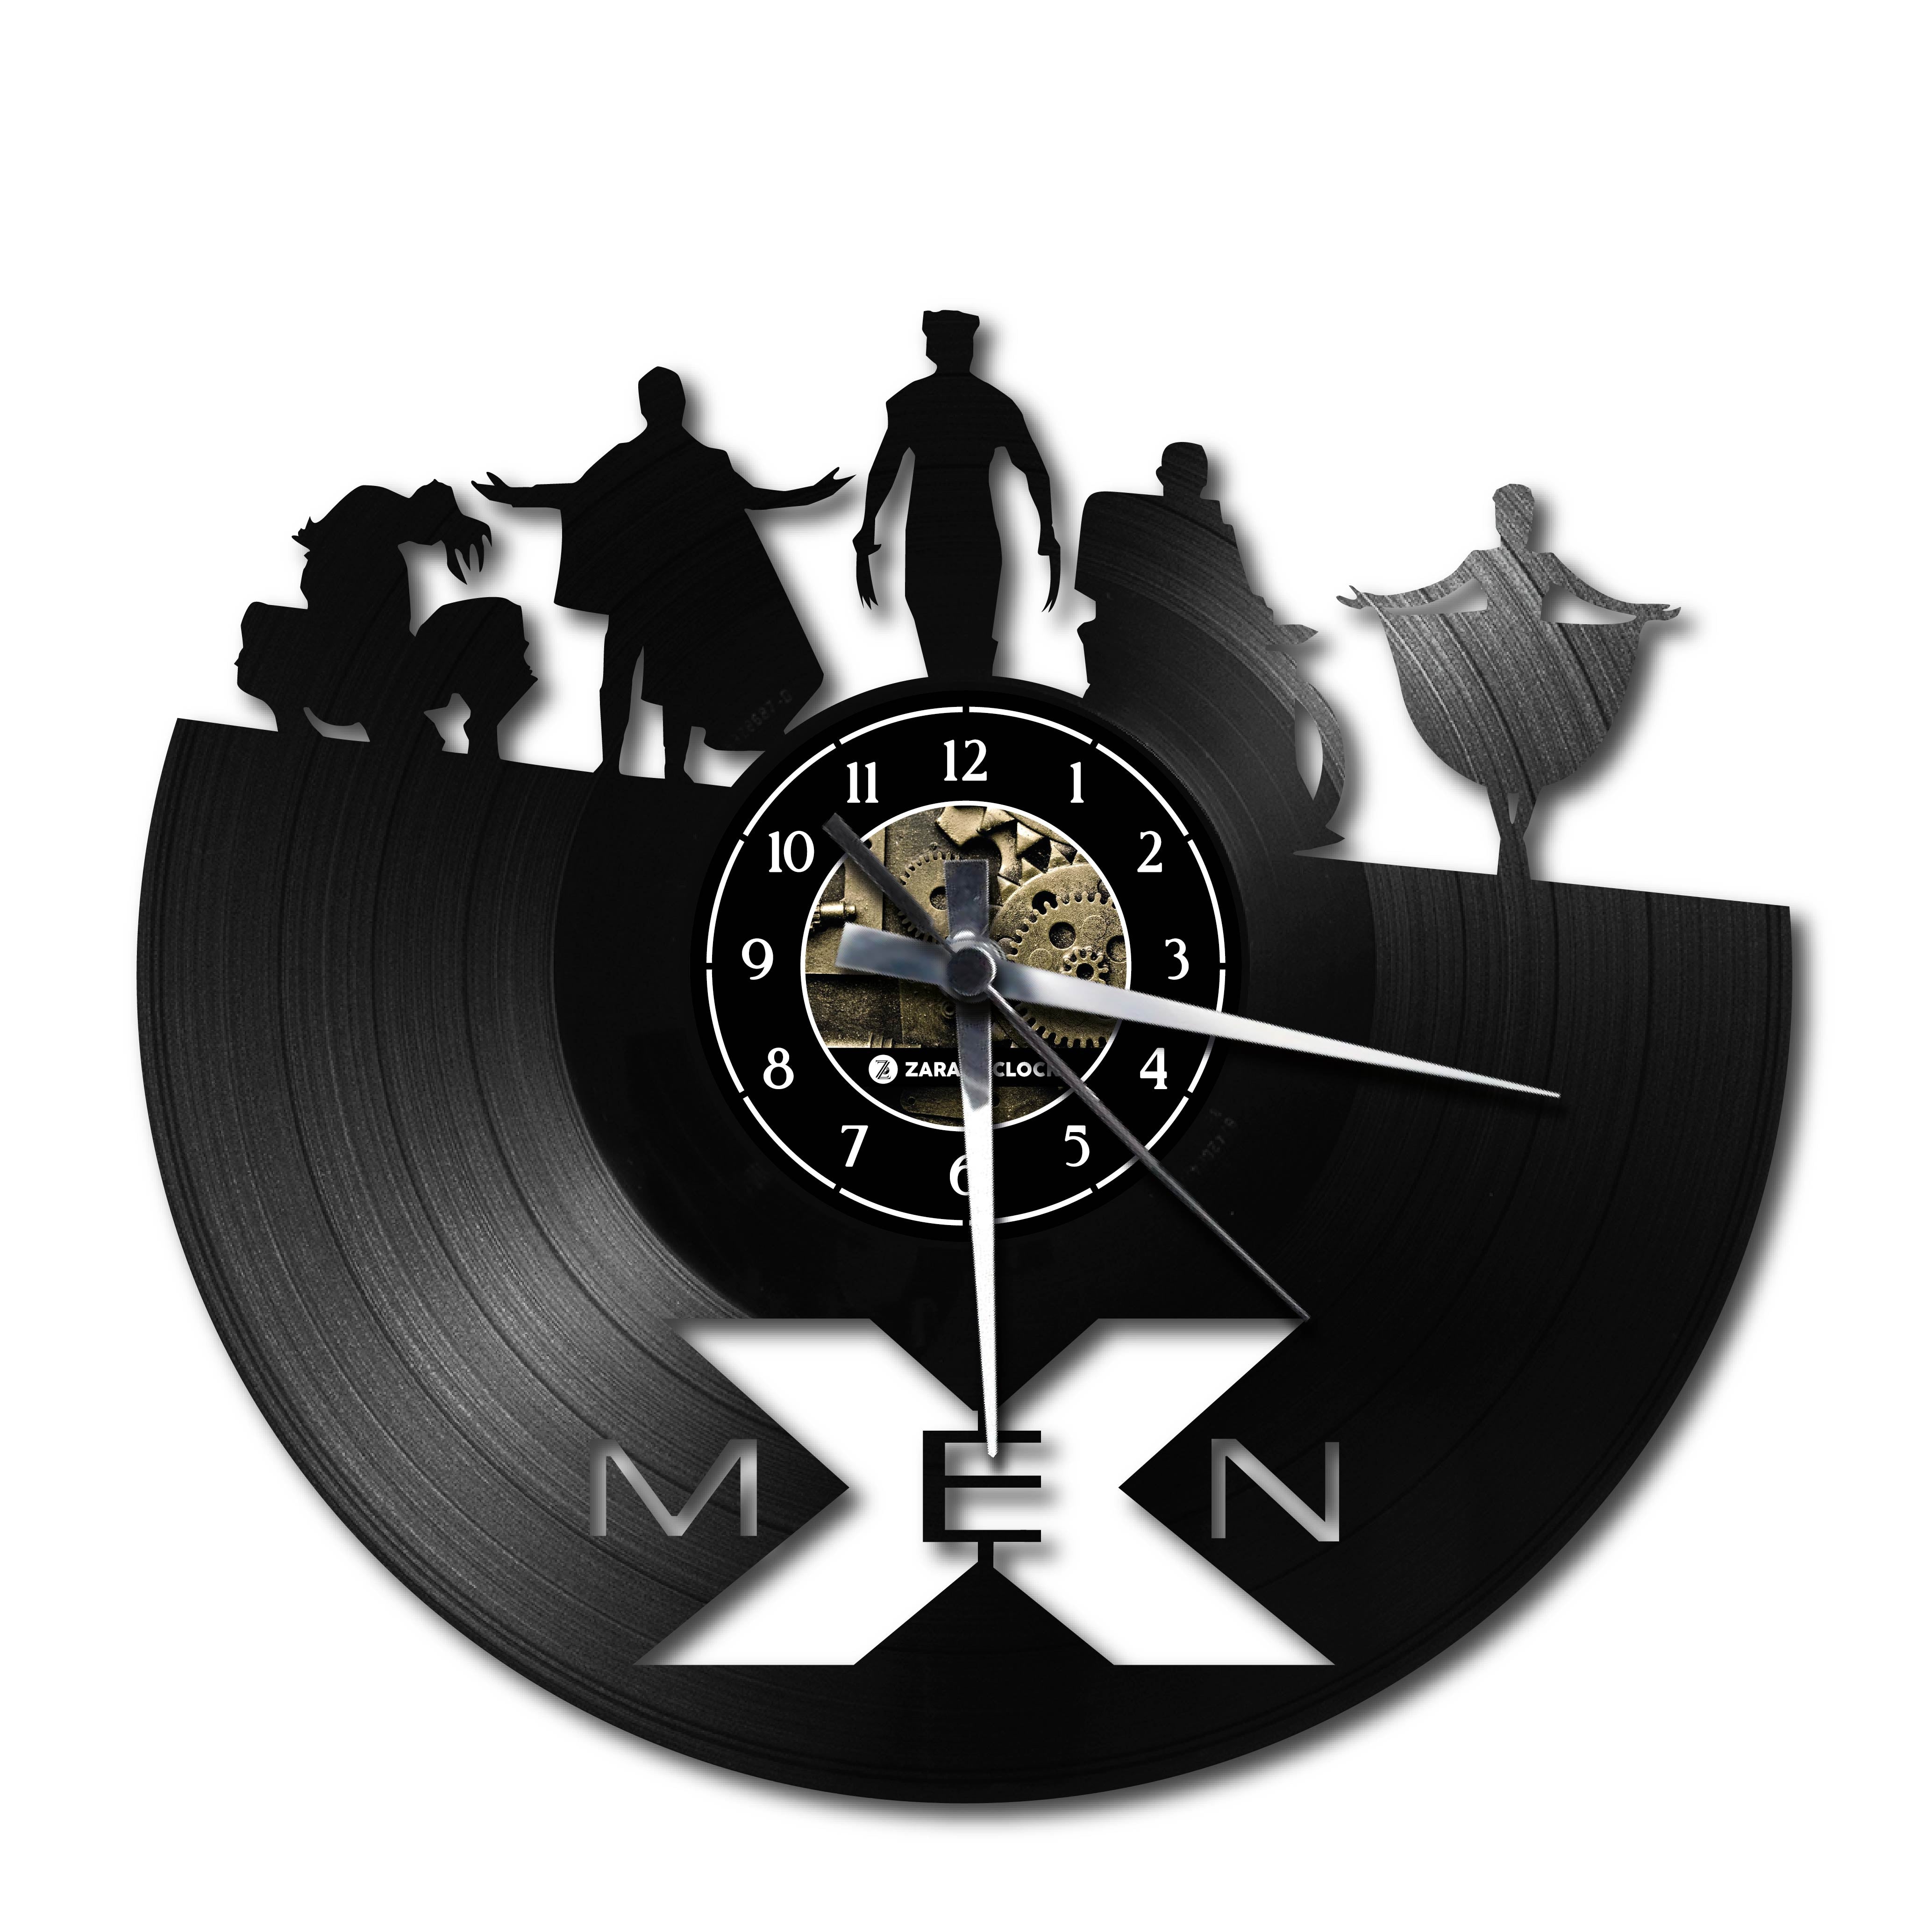 X-MEN ✦ orologio in vinile